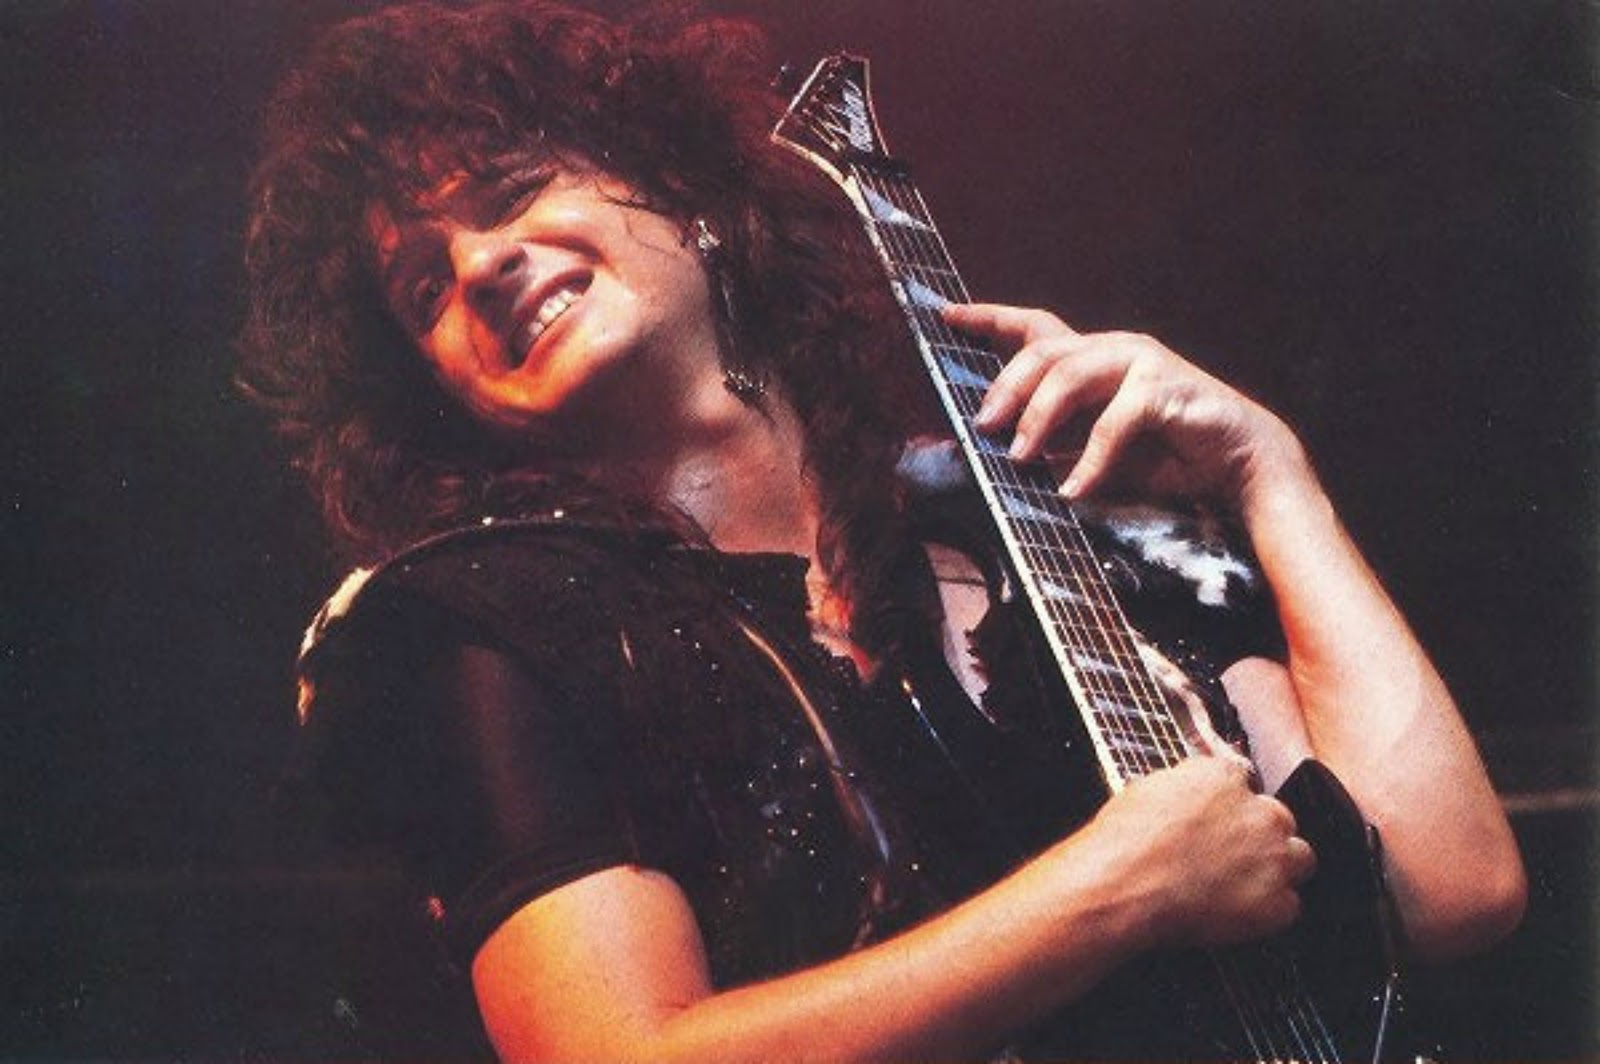 El 5 de abril de 2007 murió Murió Mark St. John quién fue guitarrista de Kiss en 1984